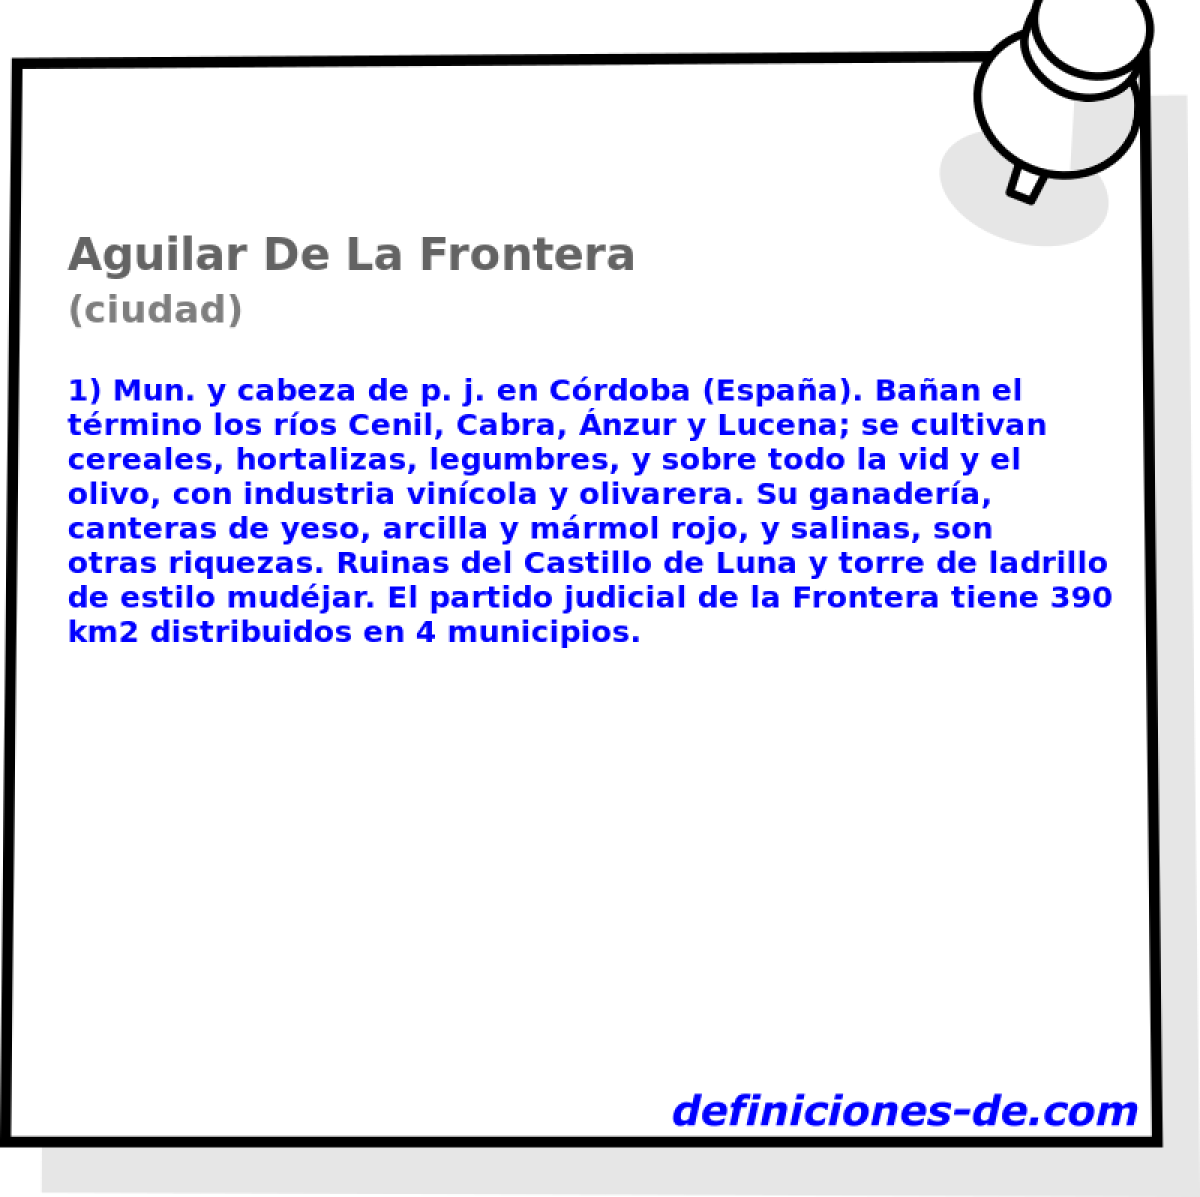 Aguilar De La Frontera (ciudad)